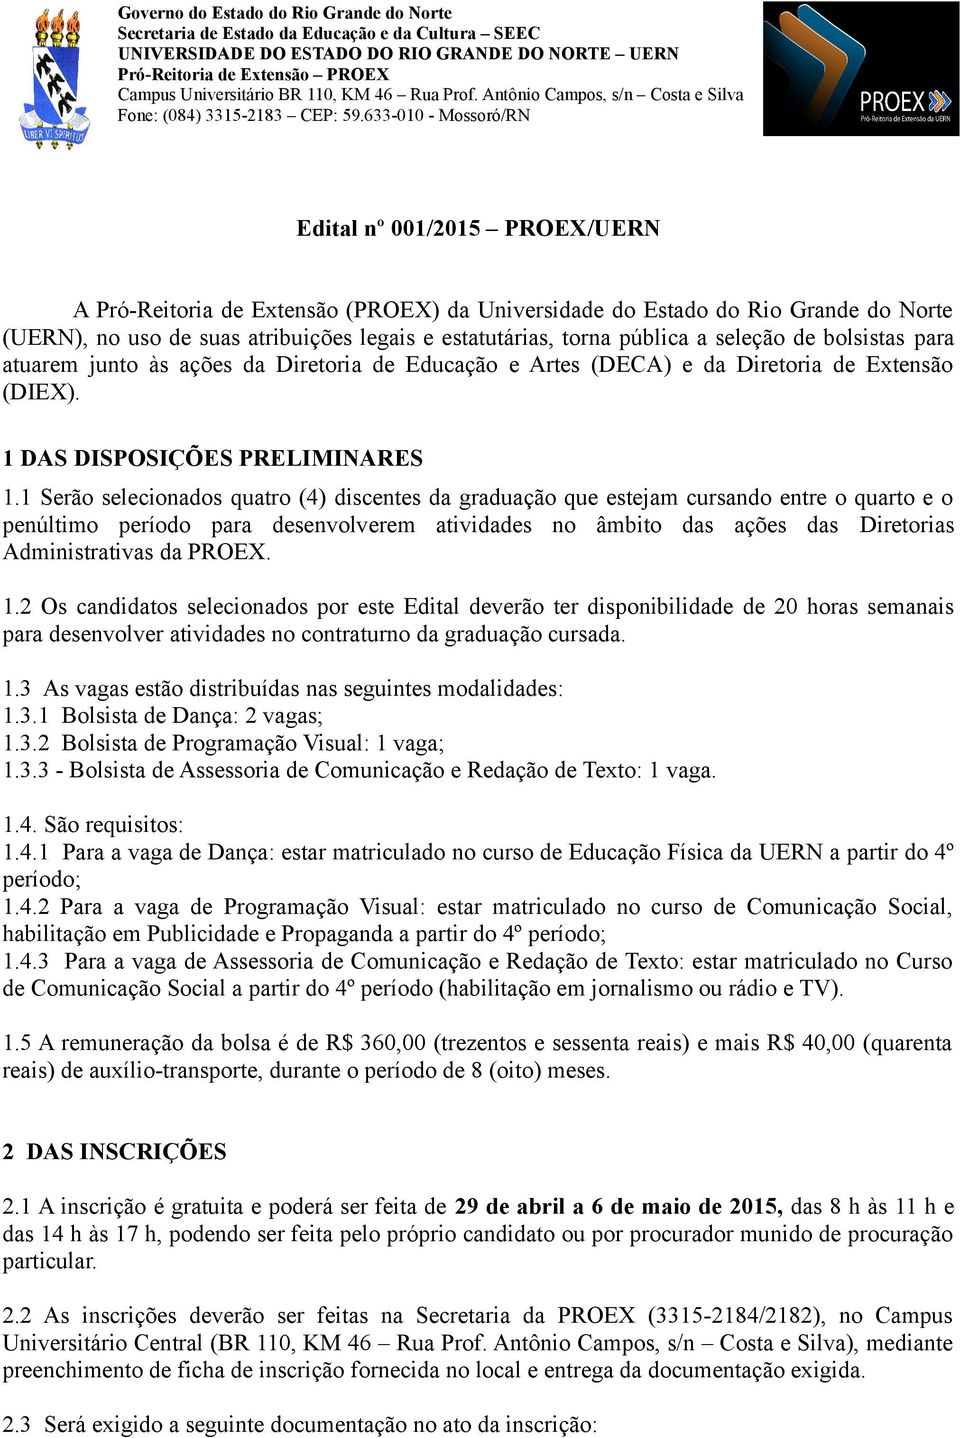 633-010 - Mossoró/RN Edital nº 001/2015 PROEX/UERN A Pró-Reitoria de Extensão (PROEX) da Universidade do Estado do Rio Grande do Norte (UERN), no uso de suas atribuições legais e estatutárias, torna